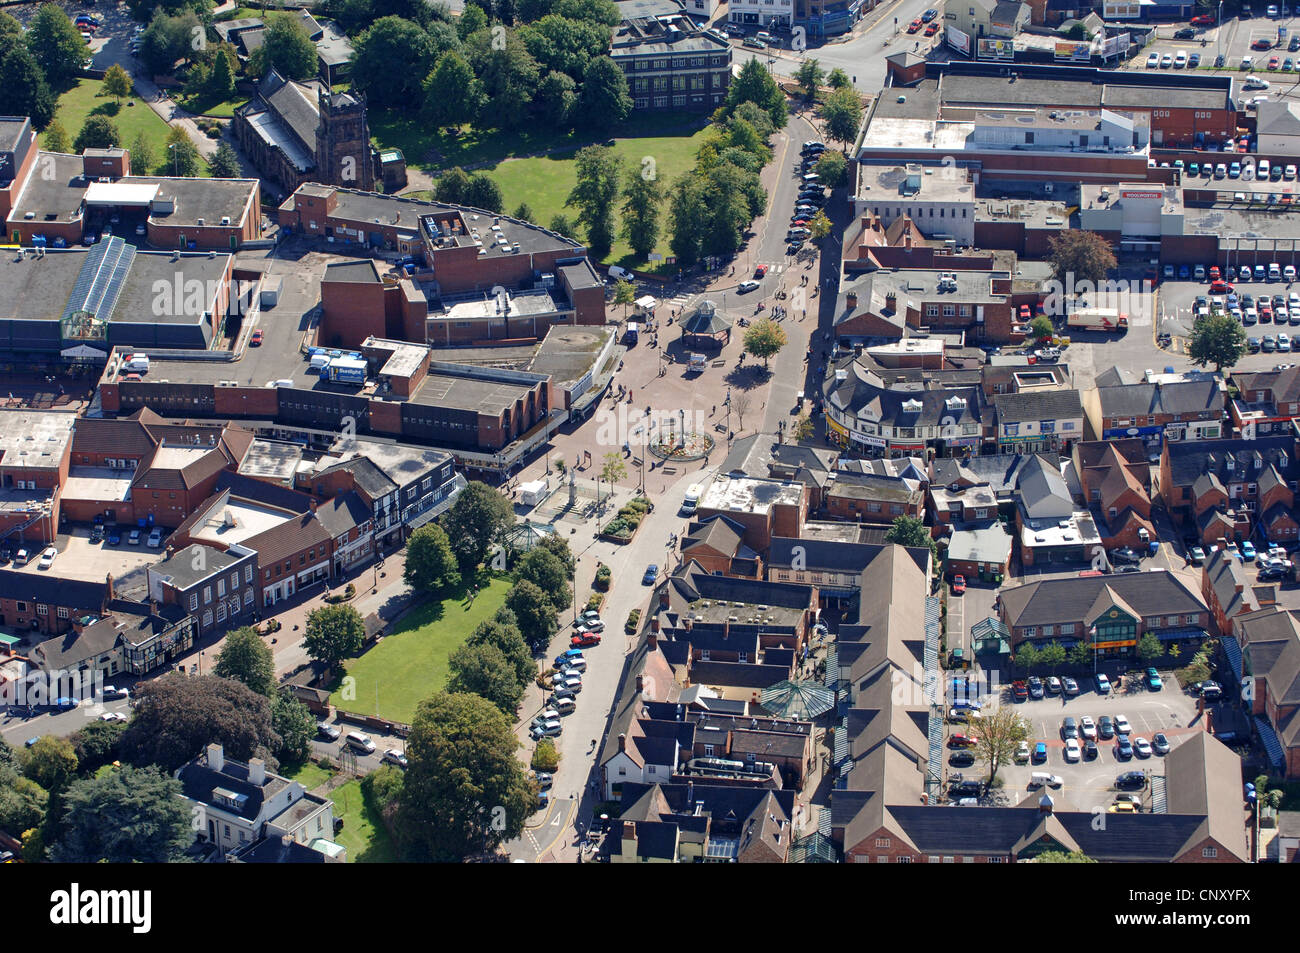 Une vue aérienne du centre-ville de Wolverhampton Staffordshire Uk Banque D'Images